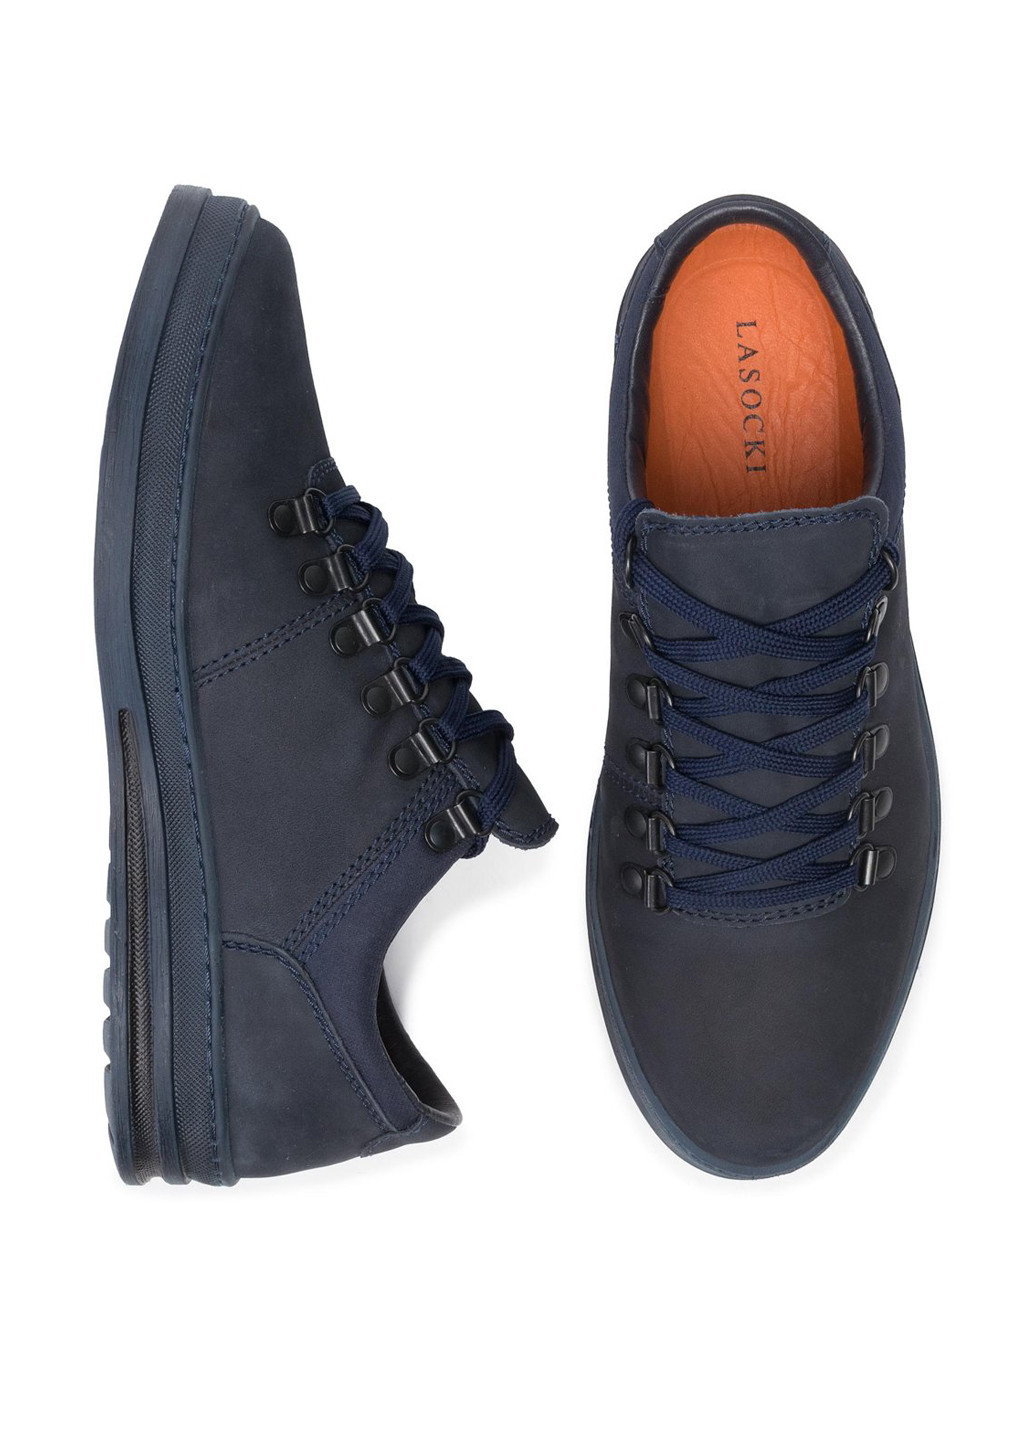 Темно-синие спортивные напівчеревики lasocki for men mi08-c611-601-03 Lasocki for men на шнурках